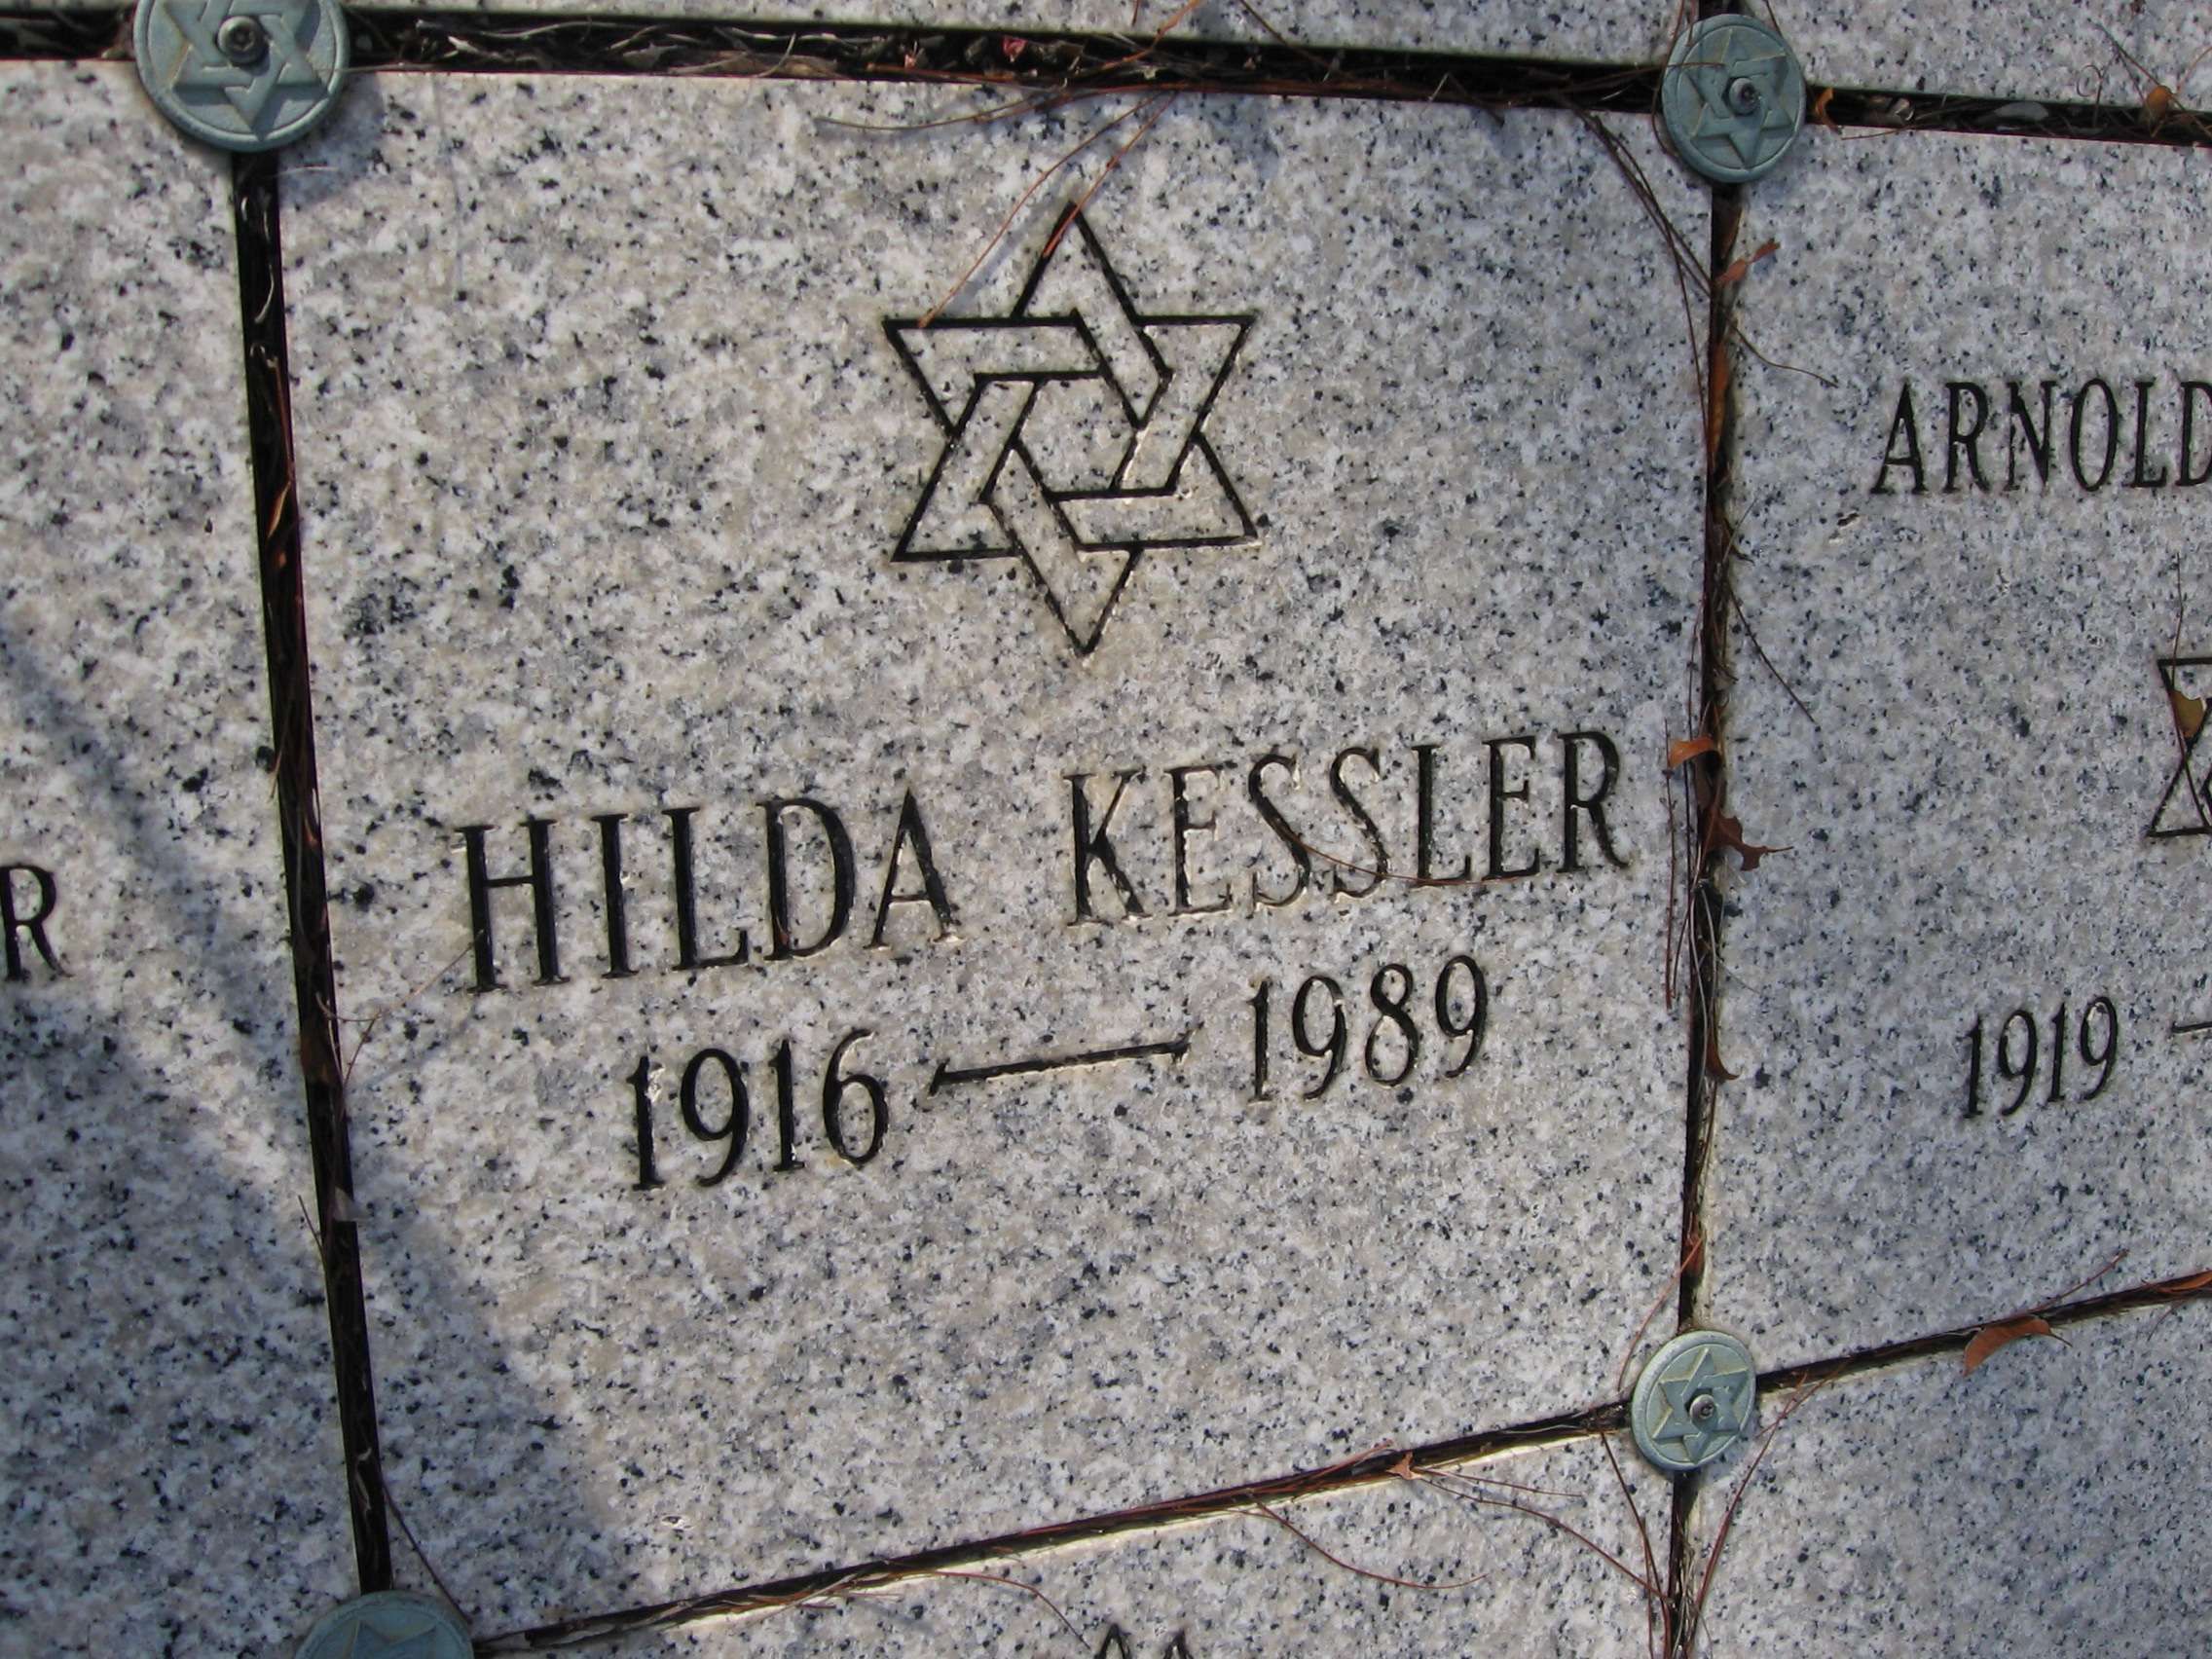 Hilda Kessler